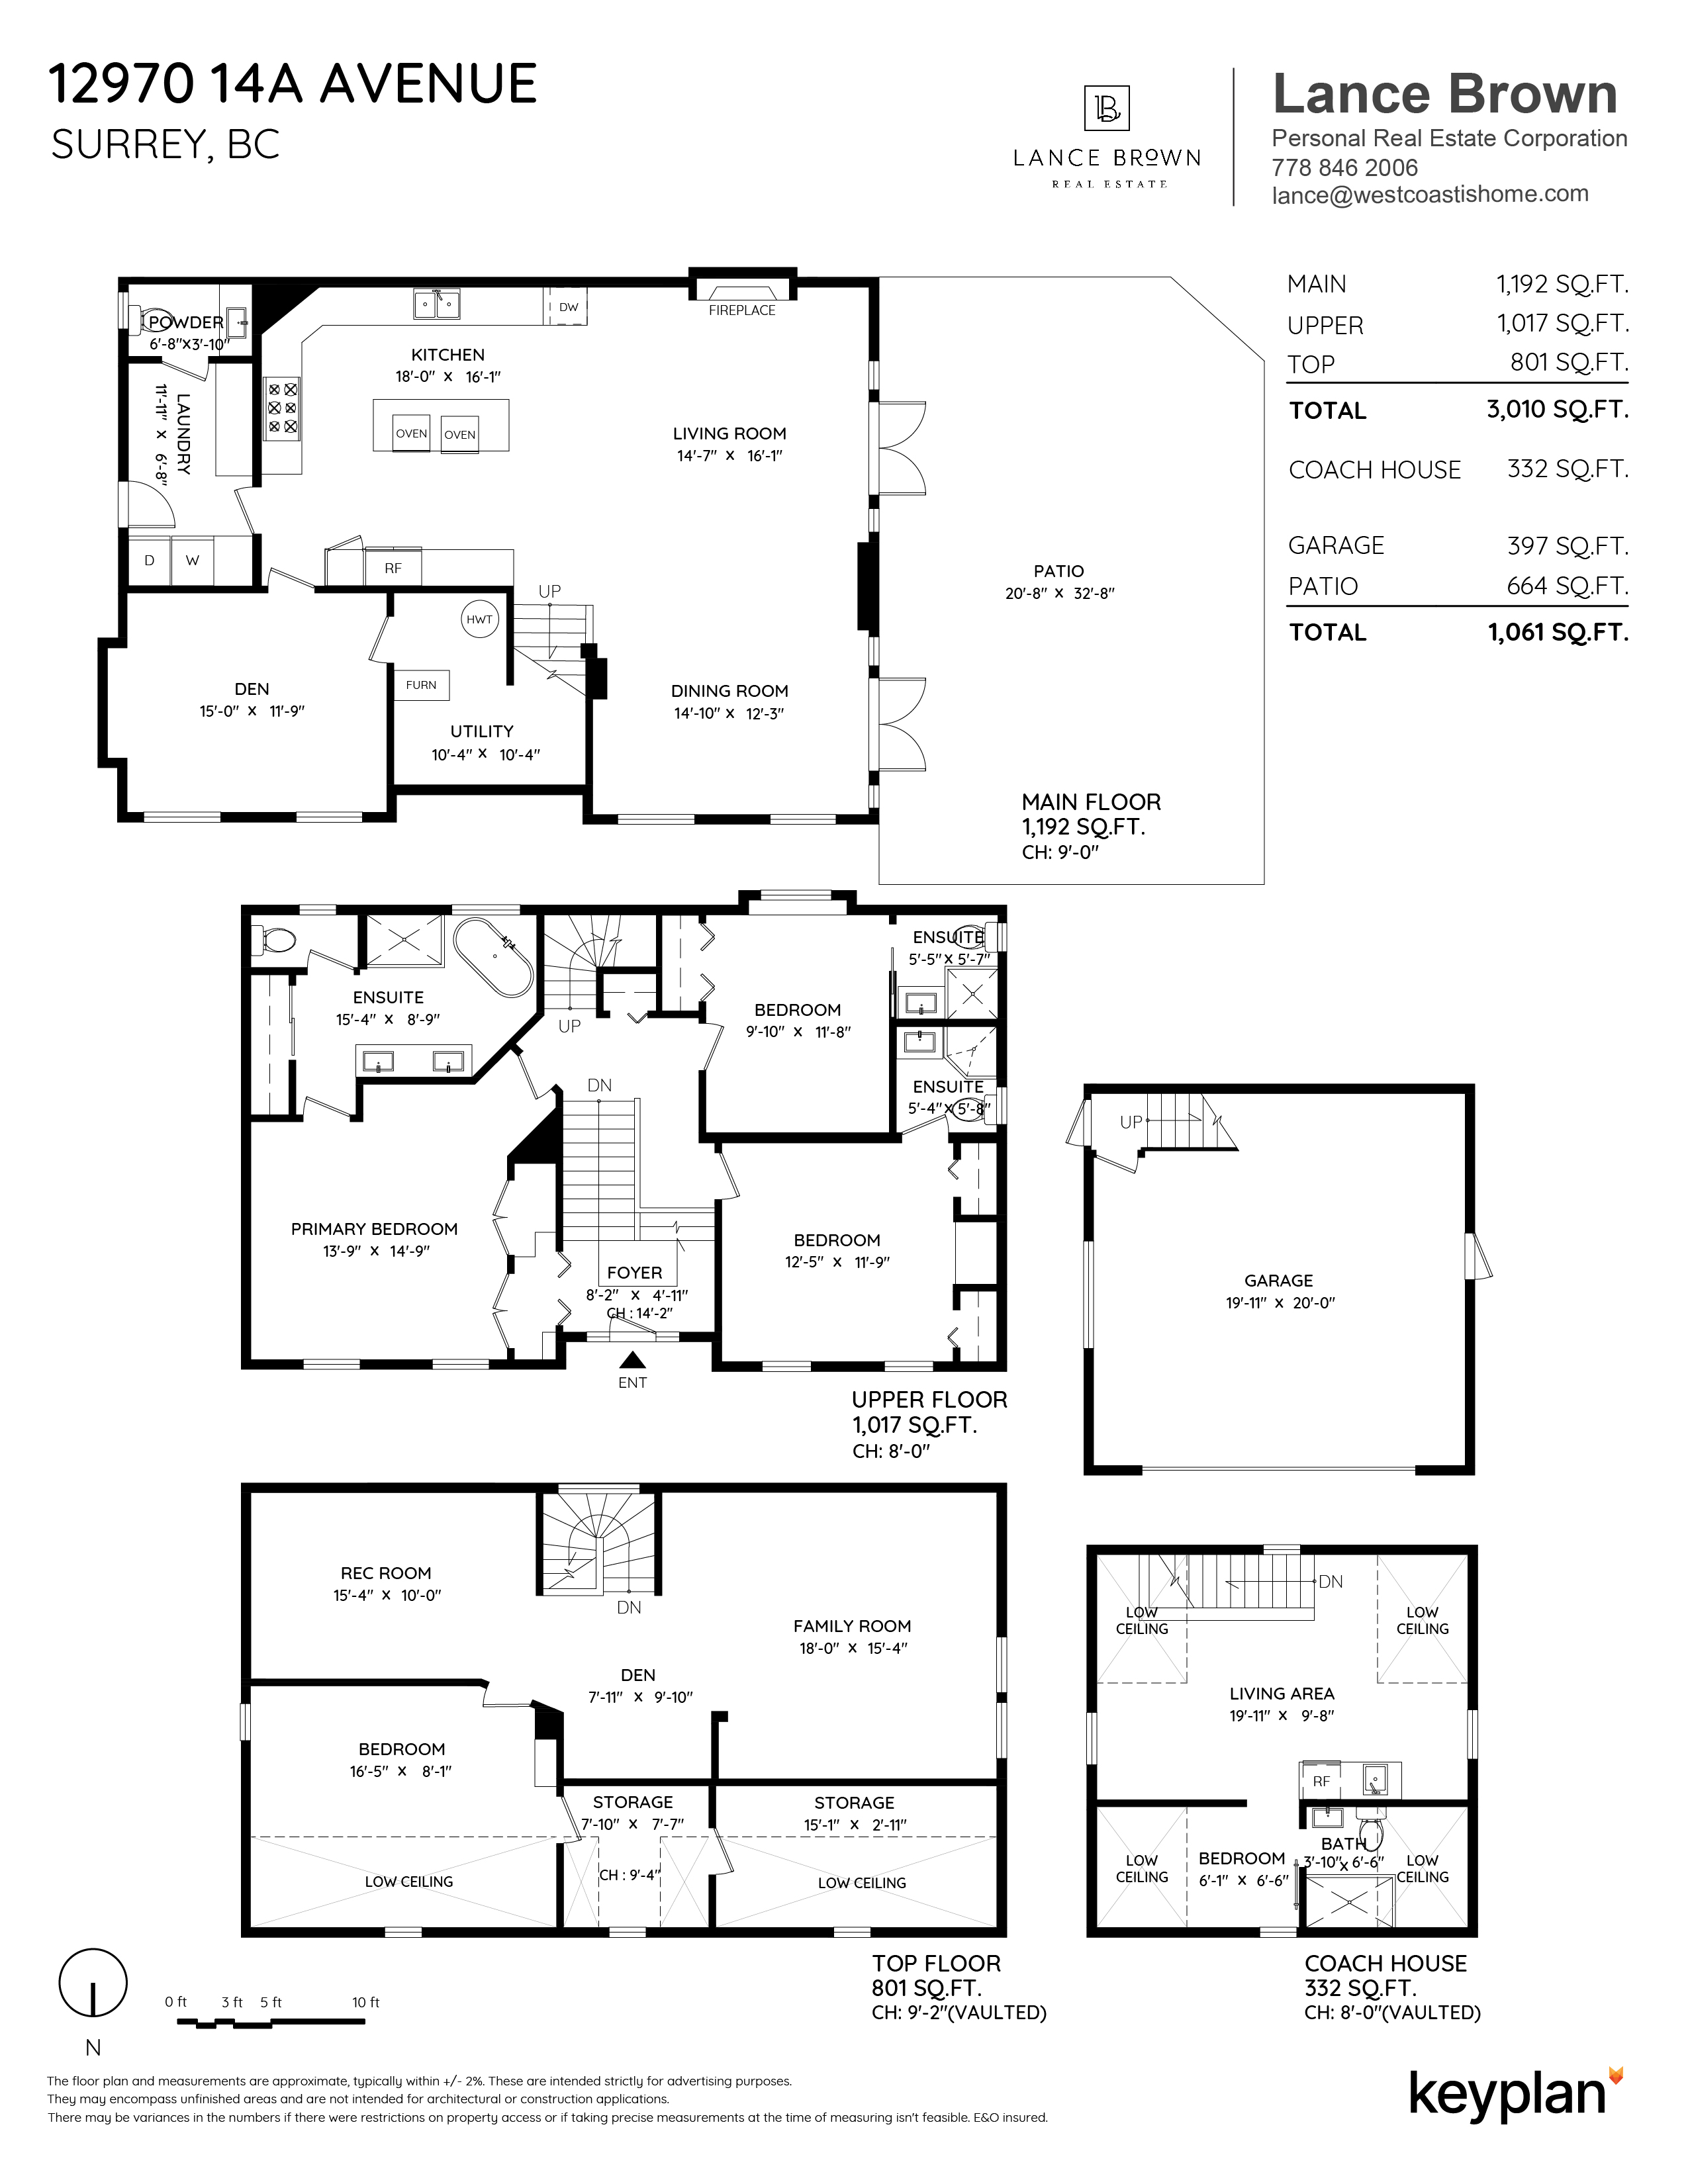 Lance Brown - 12970 14A Avenue, Surrey, BC, Canada | Floor Plan 1